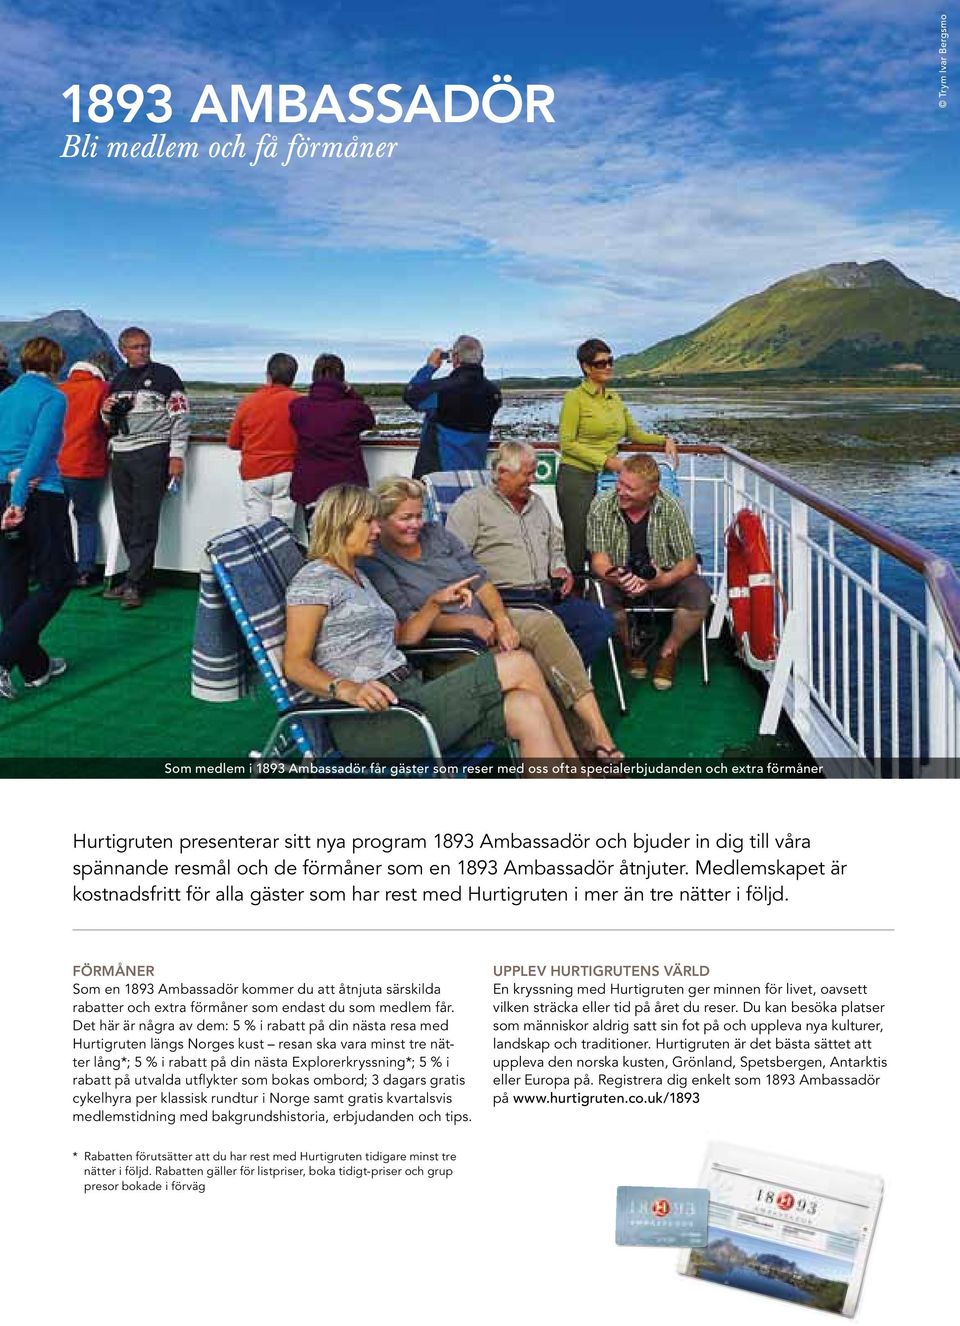 Medlemskapet är kostnadsfritt för alla gäster som har rest med Hurtigruten i mer än tre nätter i följd.